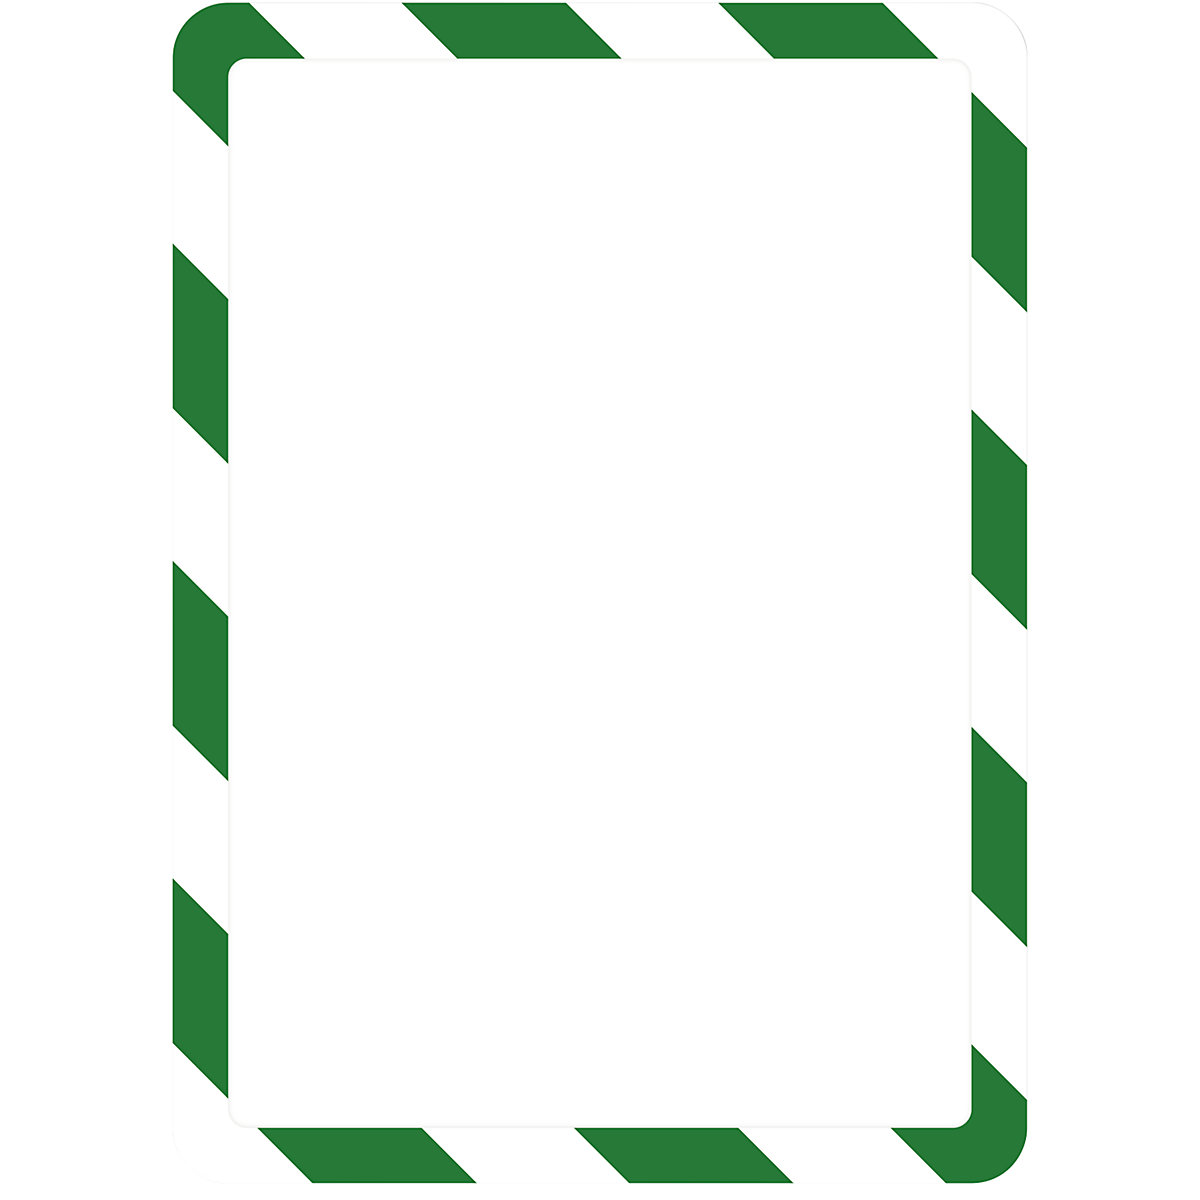 Bolsa transparente de apresentação A4 – Tarifold, com fecho magnético, verde / branca, embalagem de 2 unid.-5